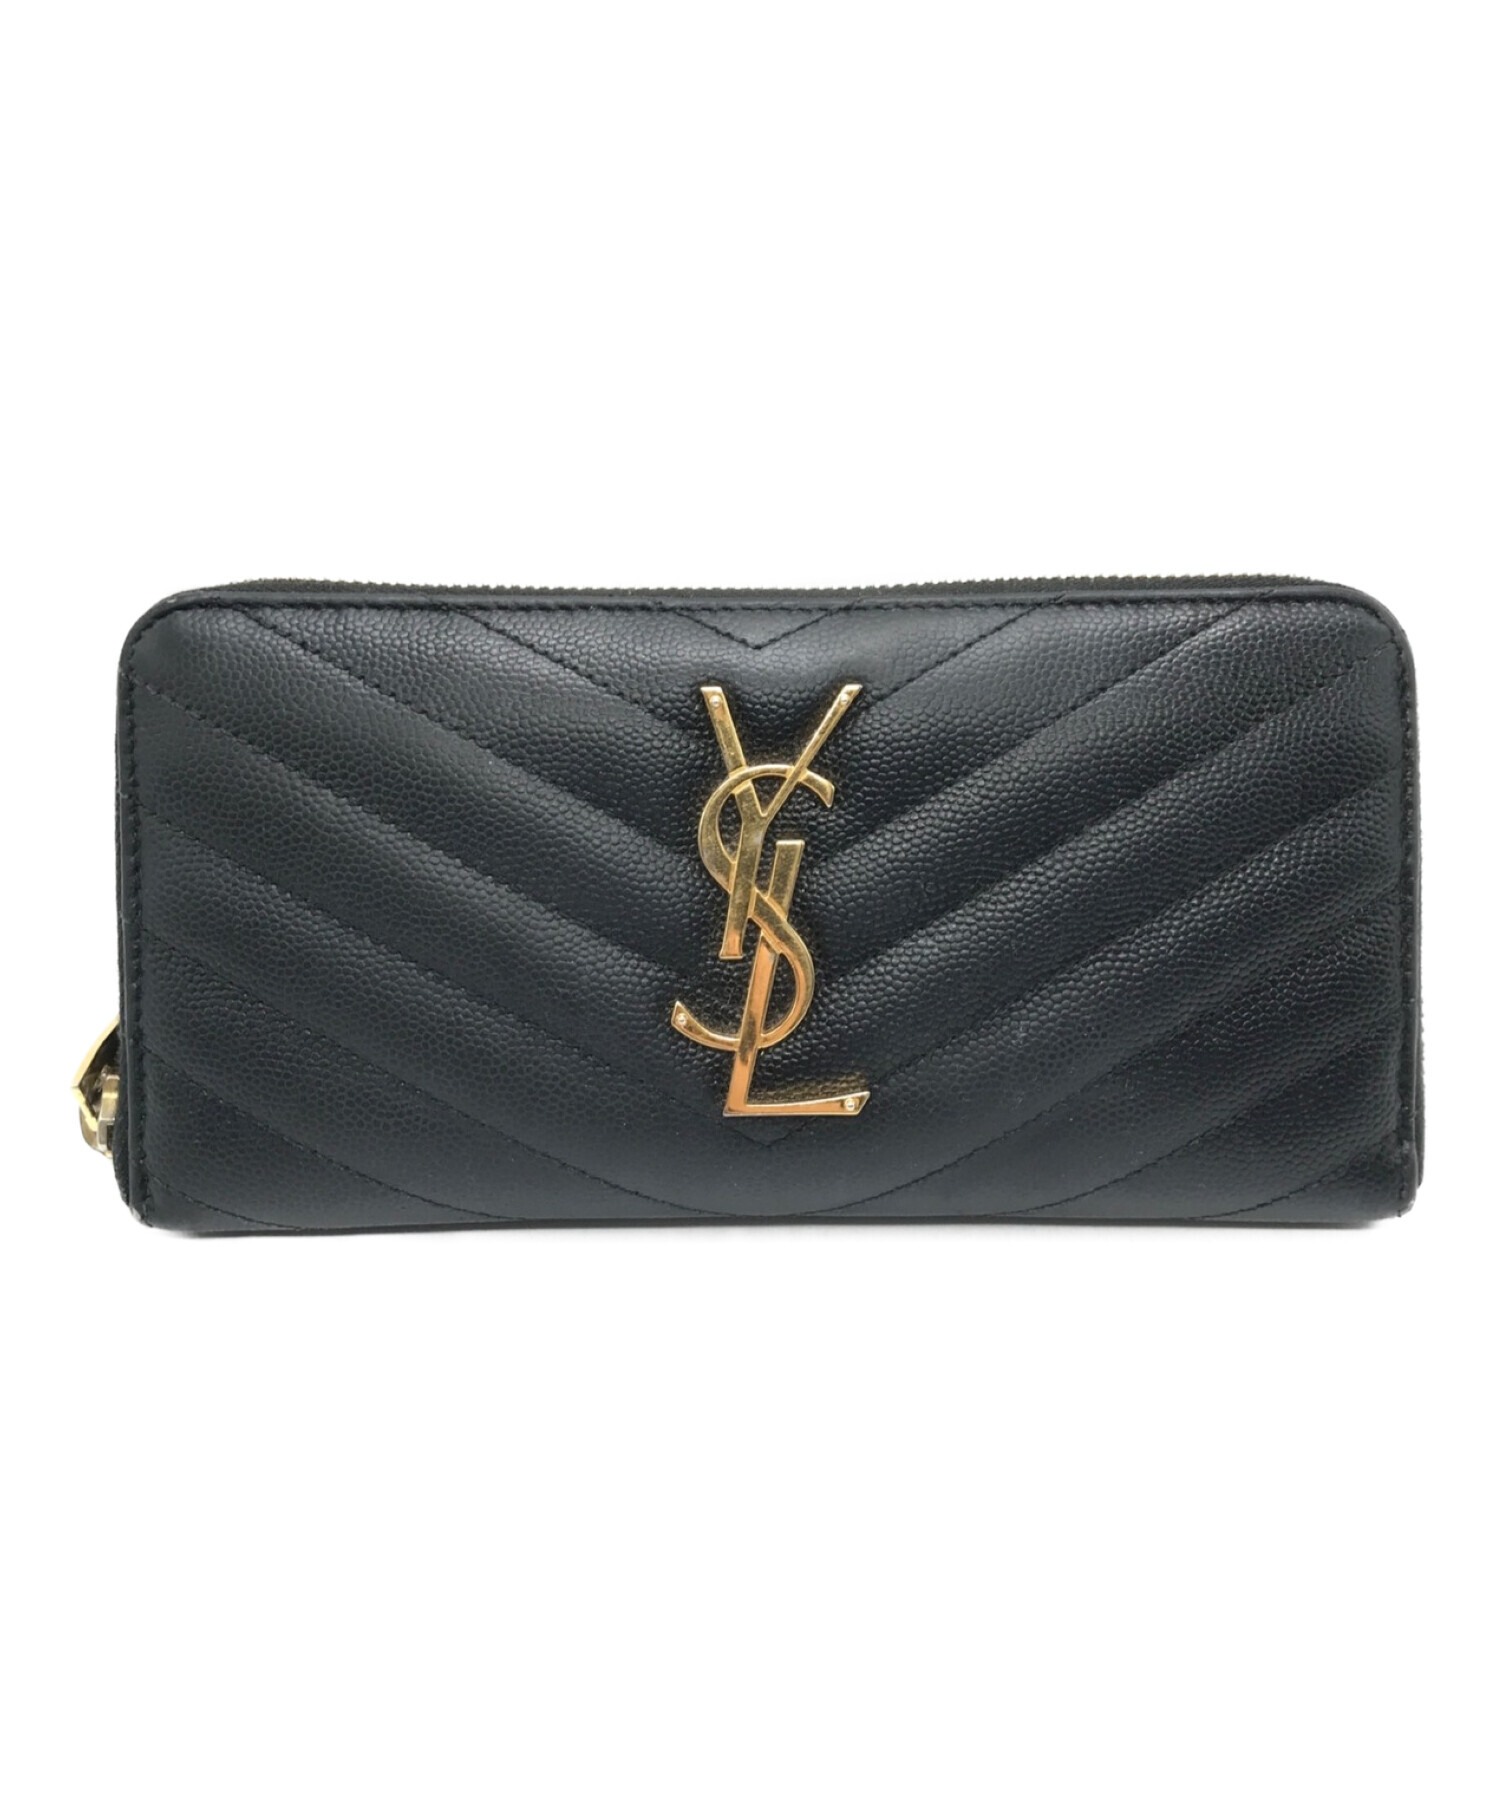 Yves Saint Laurent財布